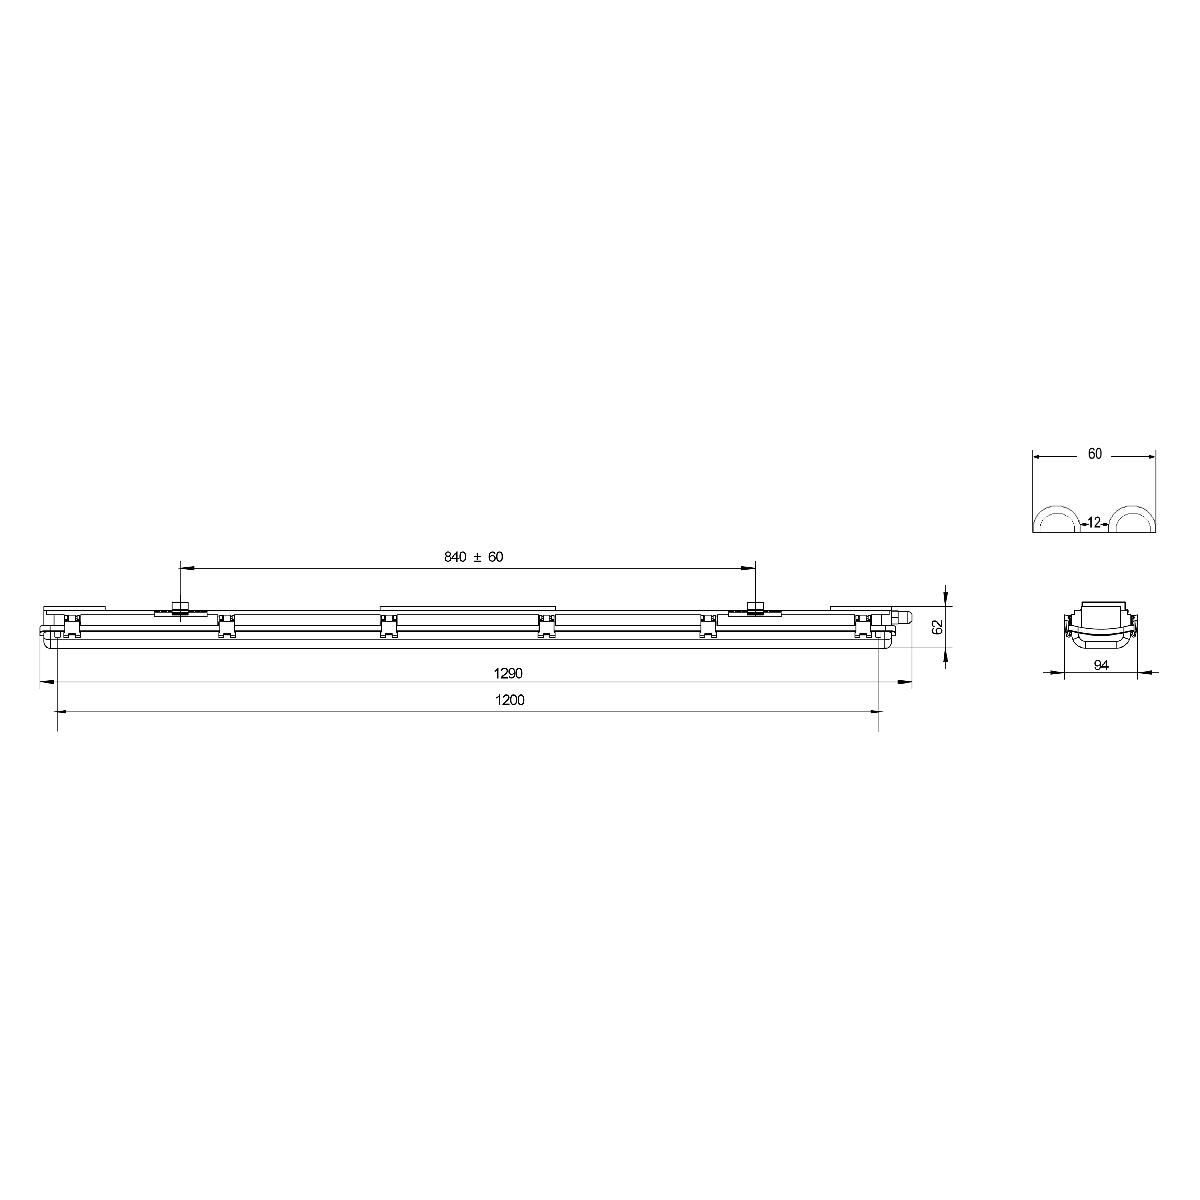 Линейный светодиодный светильник Эра SPP-101-0-002-120 Б0043658